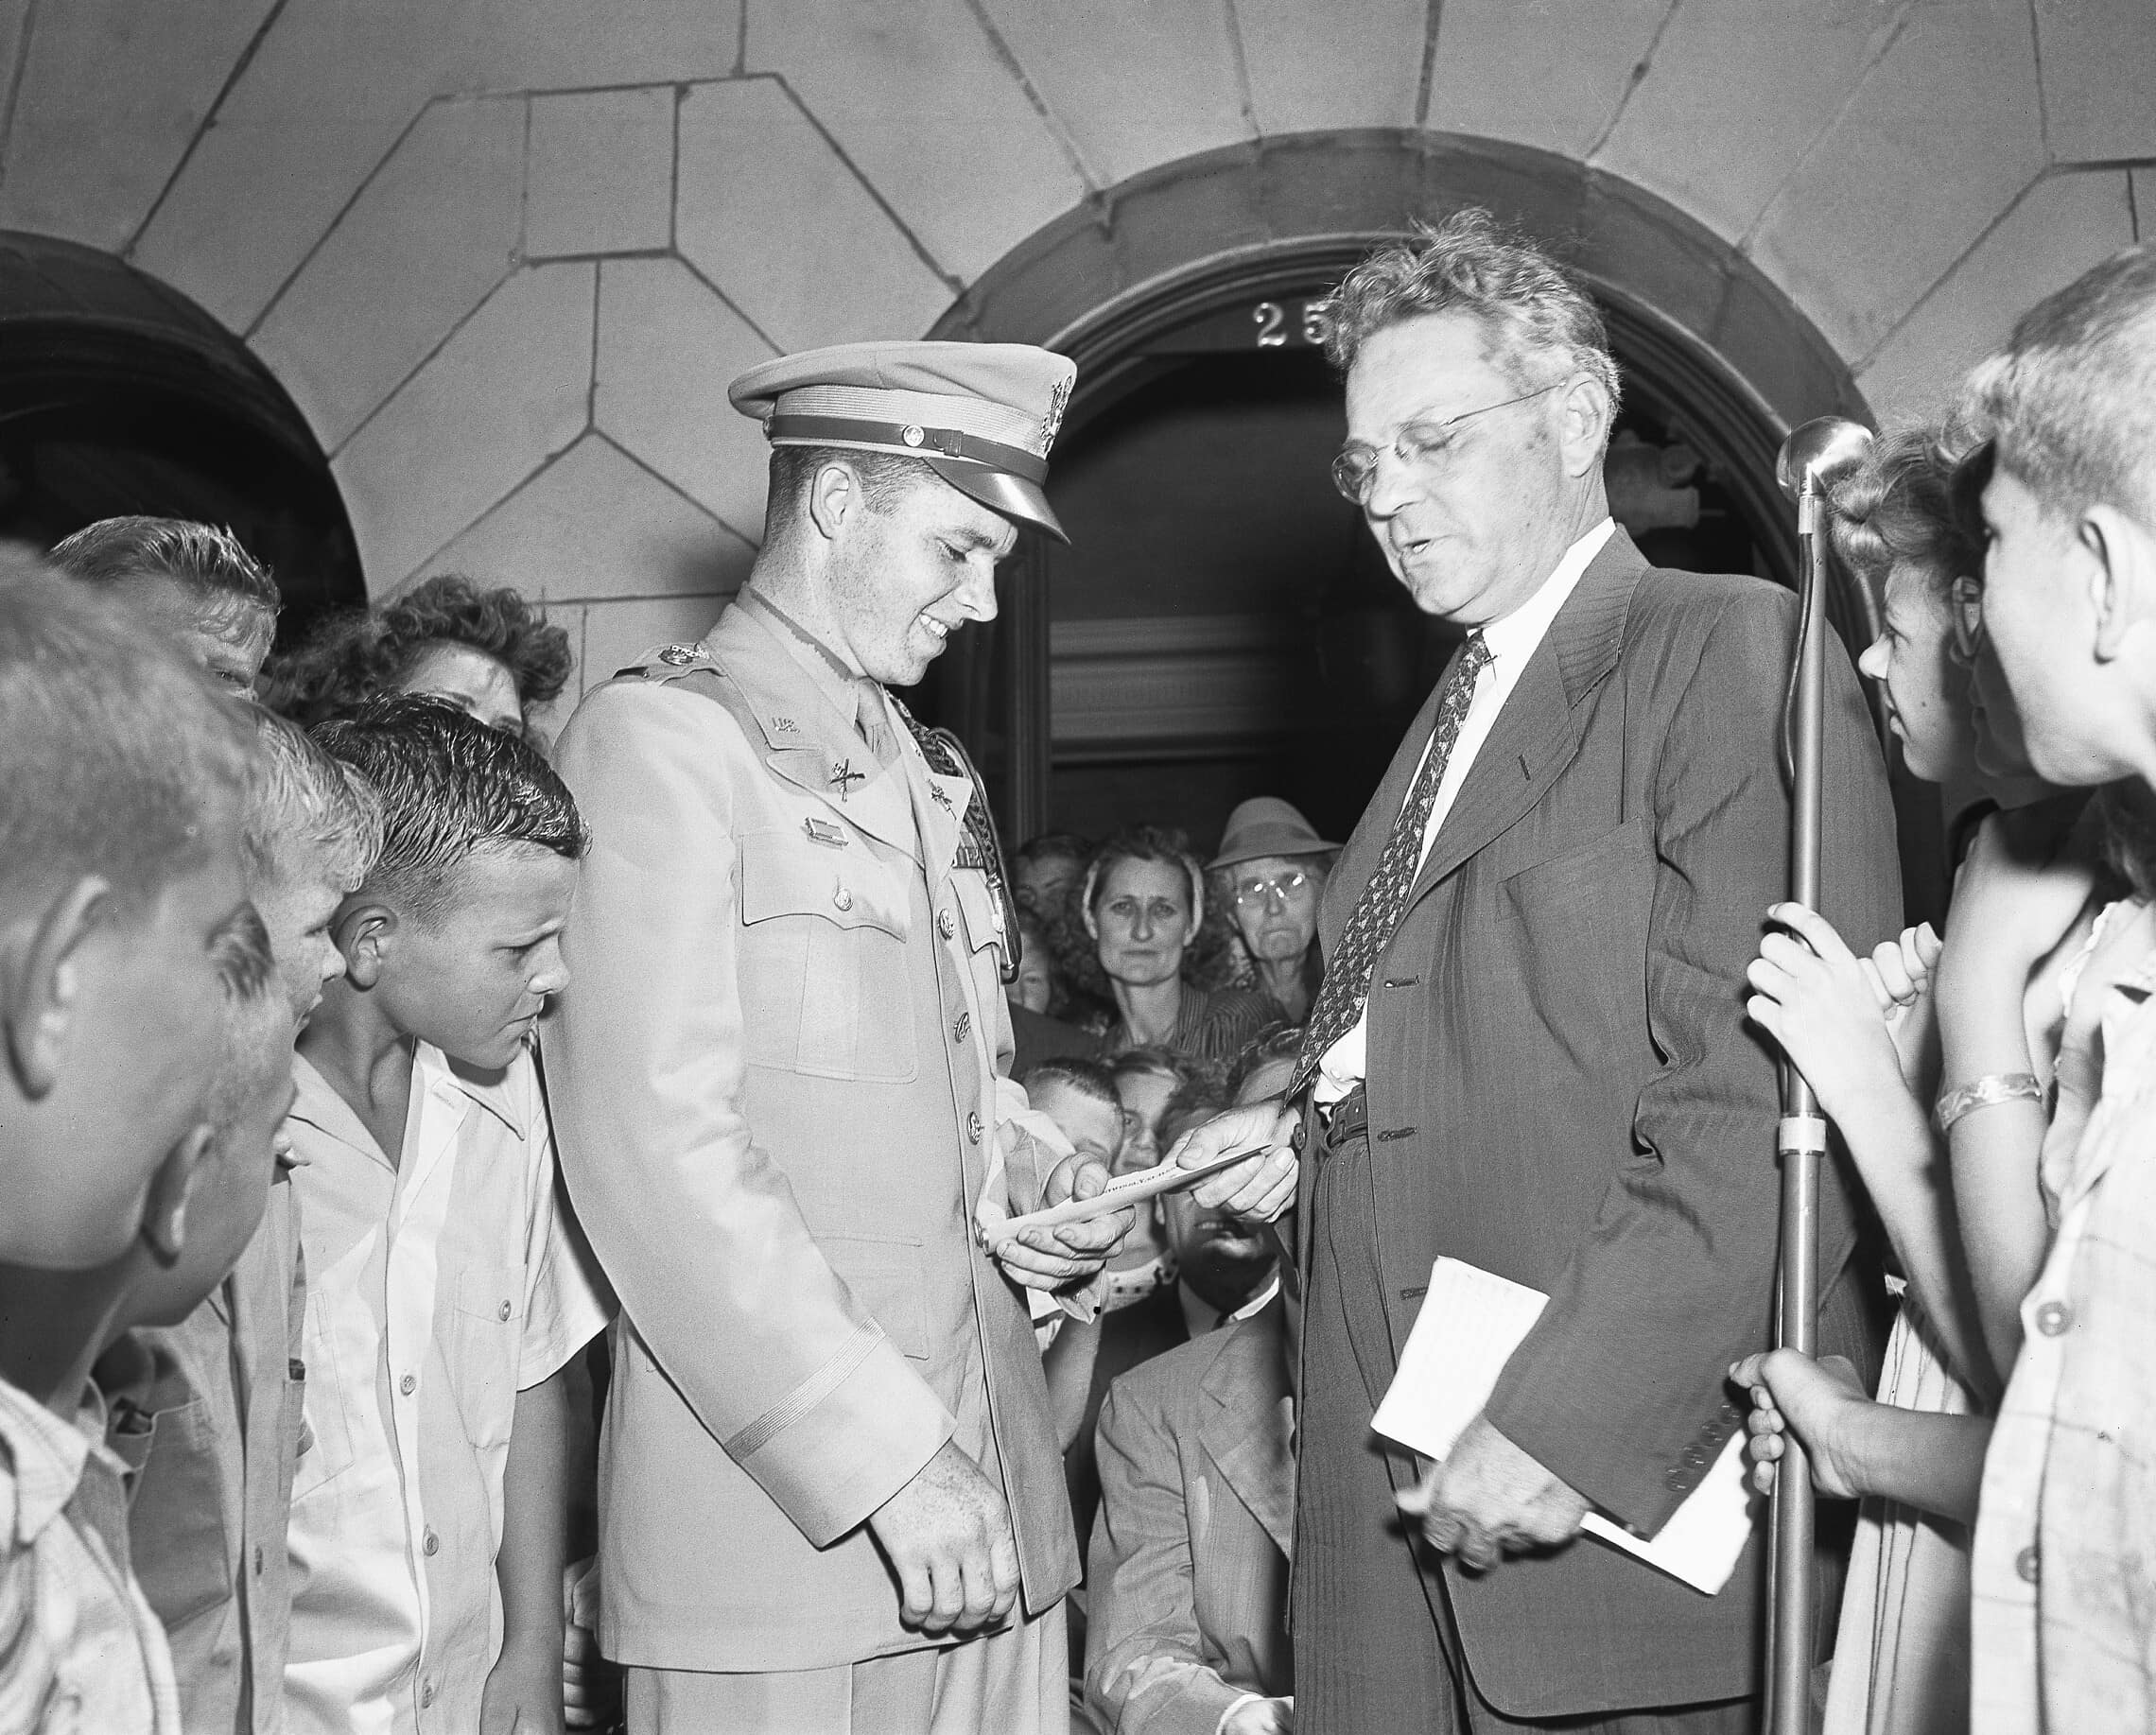 אודי מרפי מקבל צ&#039;ק בסך אלף דולר ממפקד הלגיון האמריקאי בטקסס, 27 ביוני 1945 (צילום: AP Photo/Carl E. Linde)